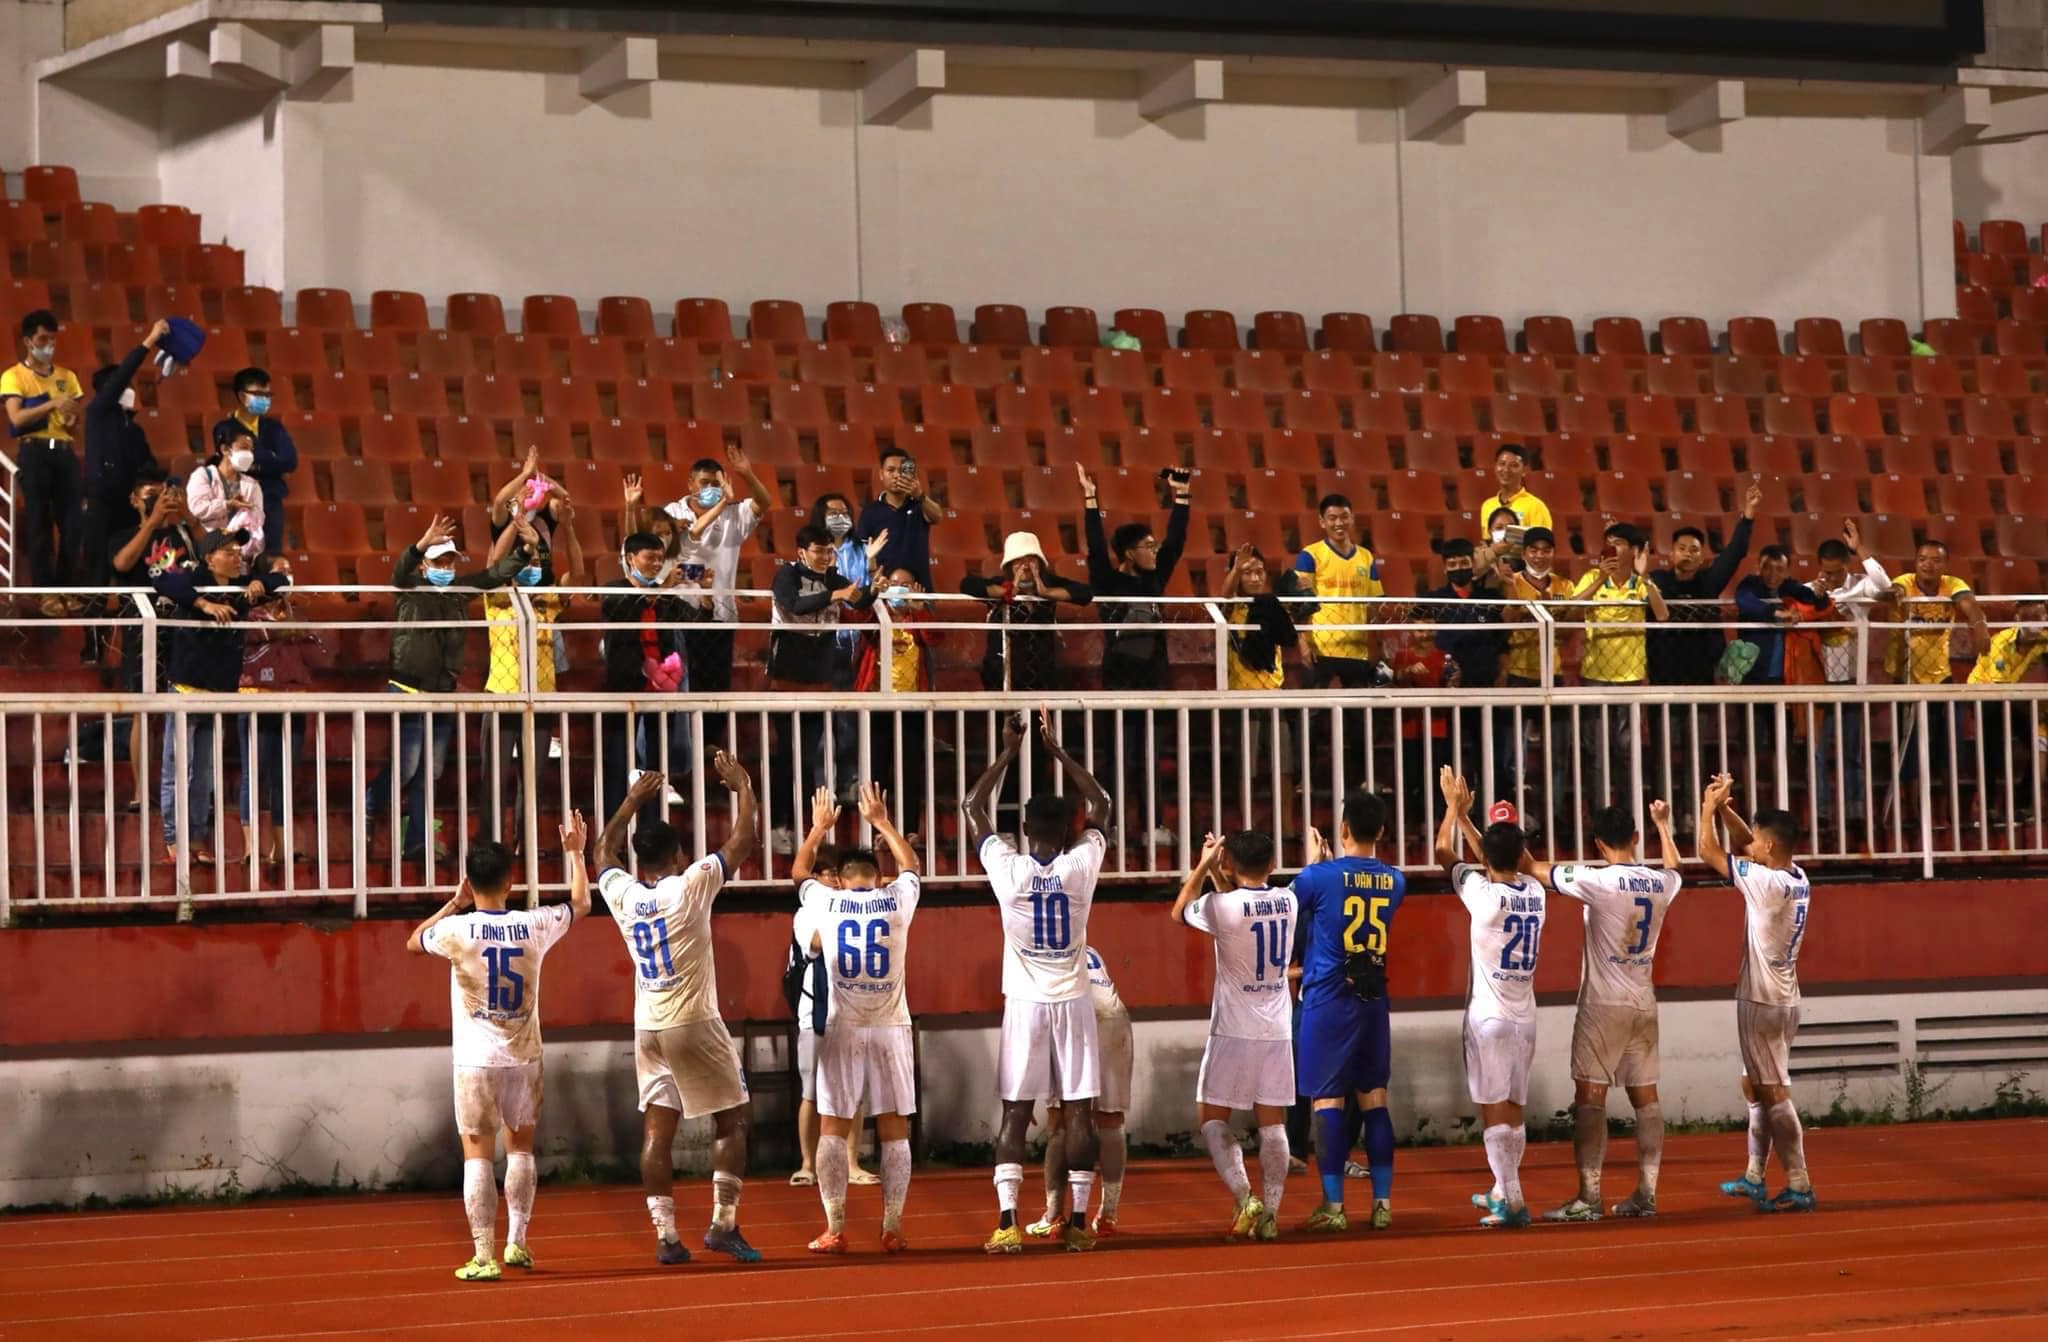 Quế Ngọc Hải cùng đồng đội cảm ơn người hâm mộ sau trận đấu (Ảnh: Internet)